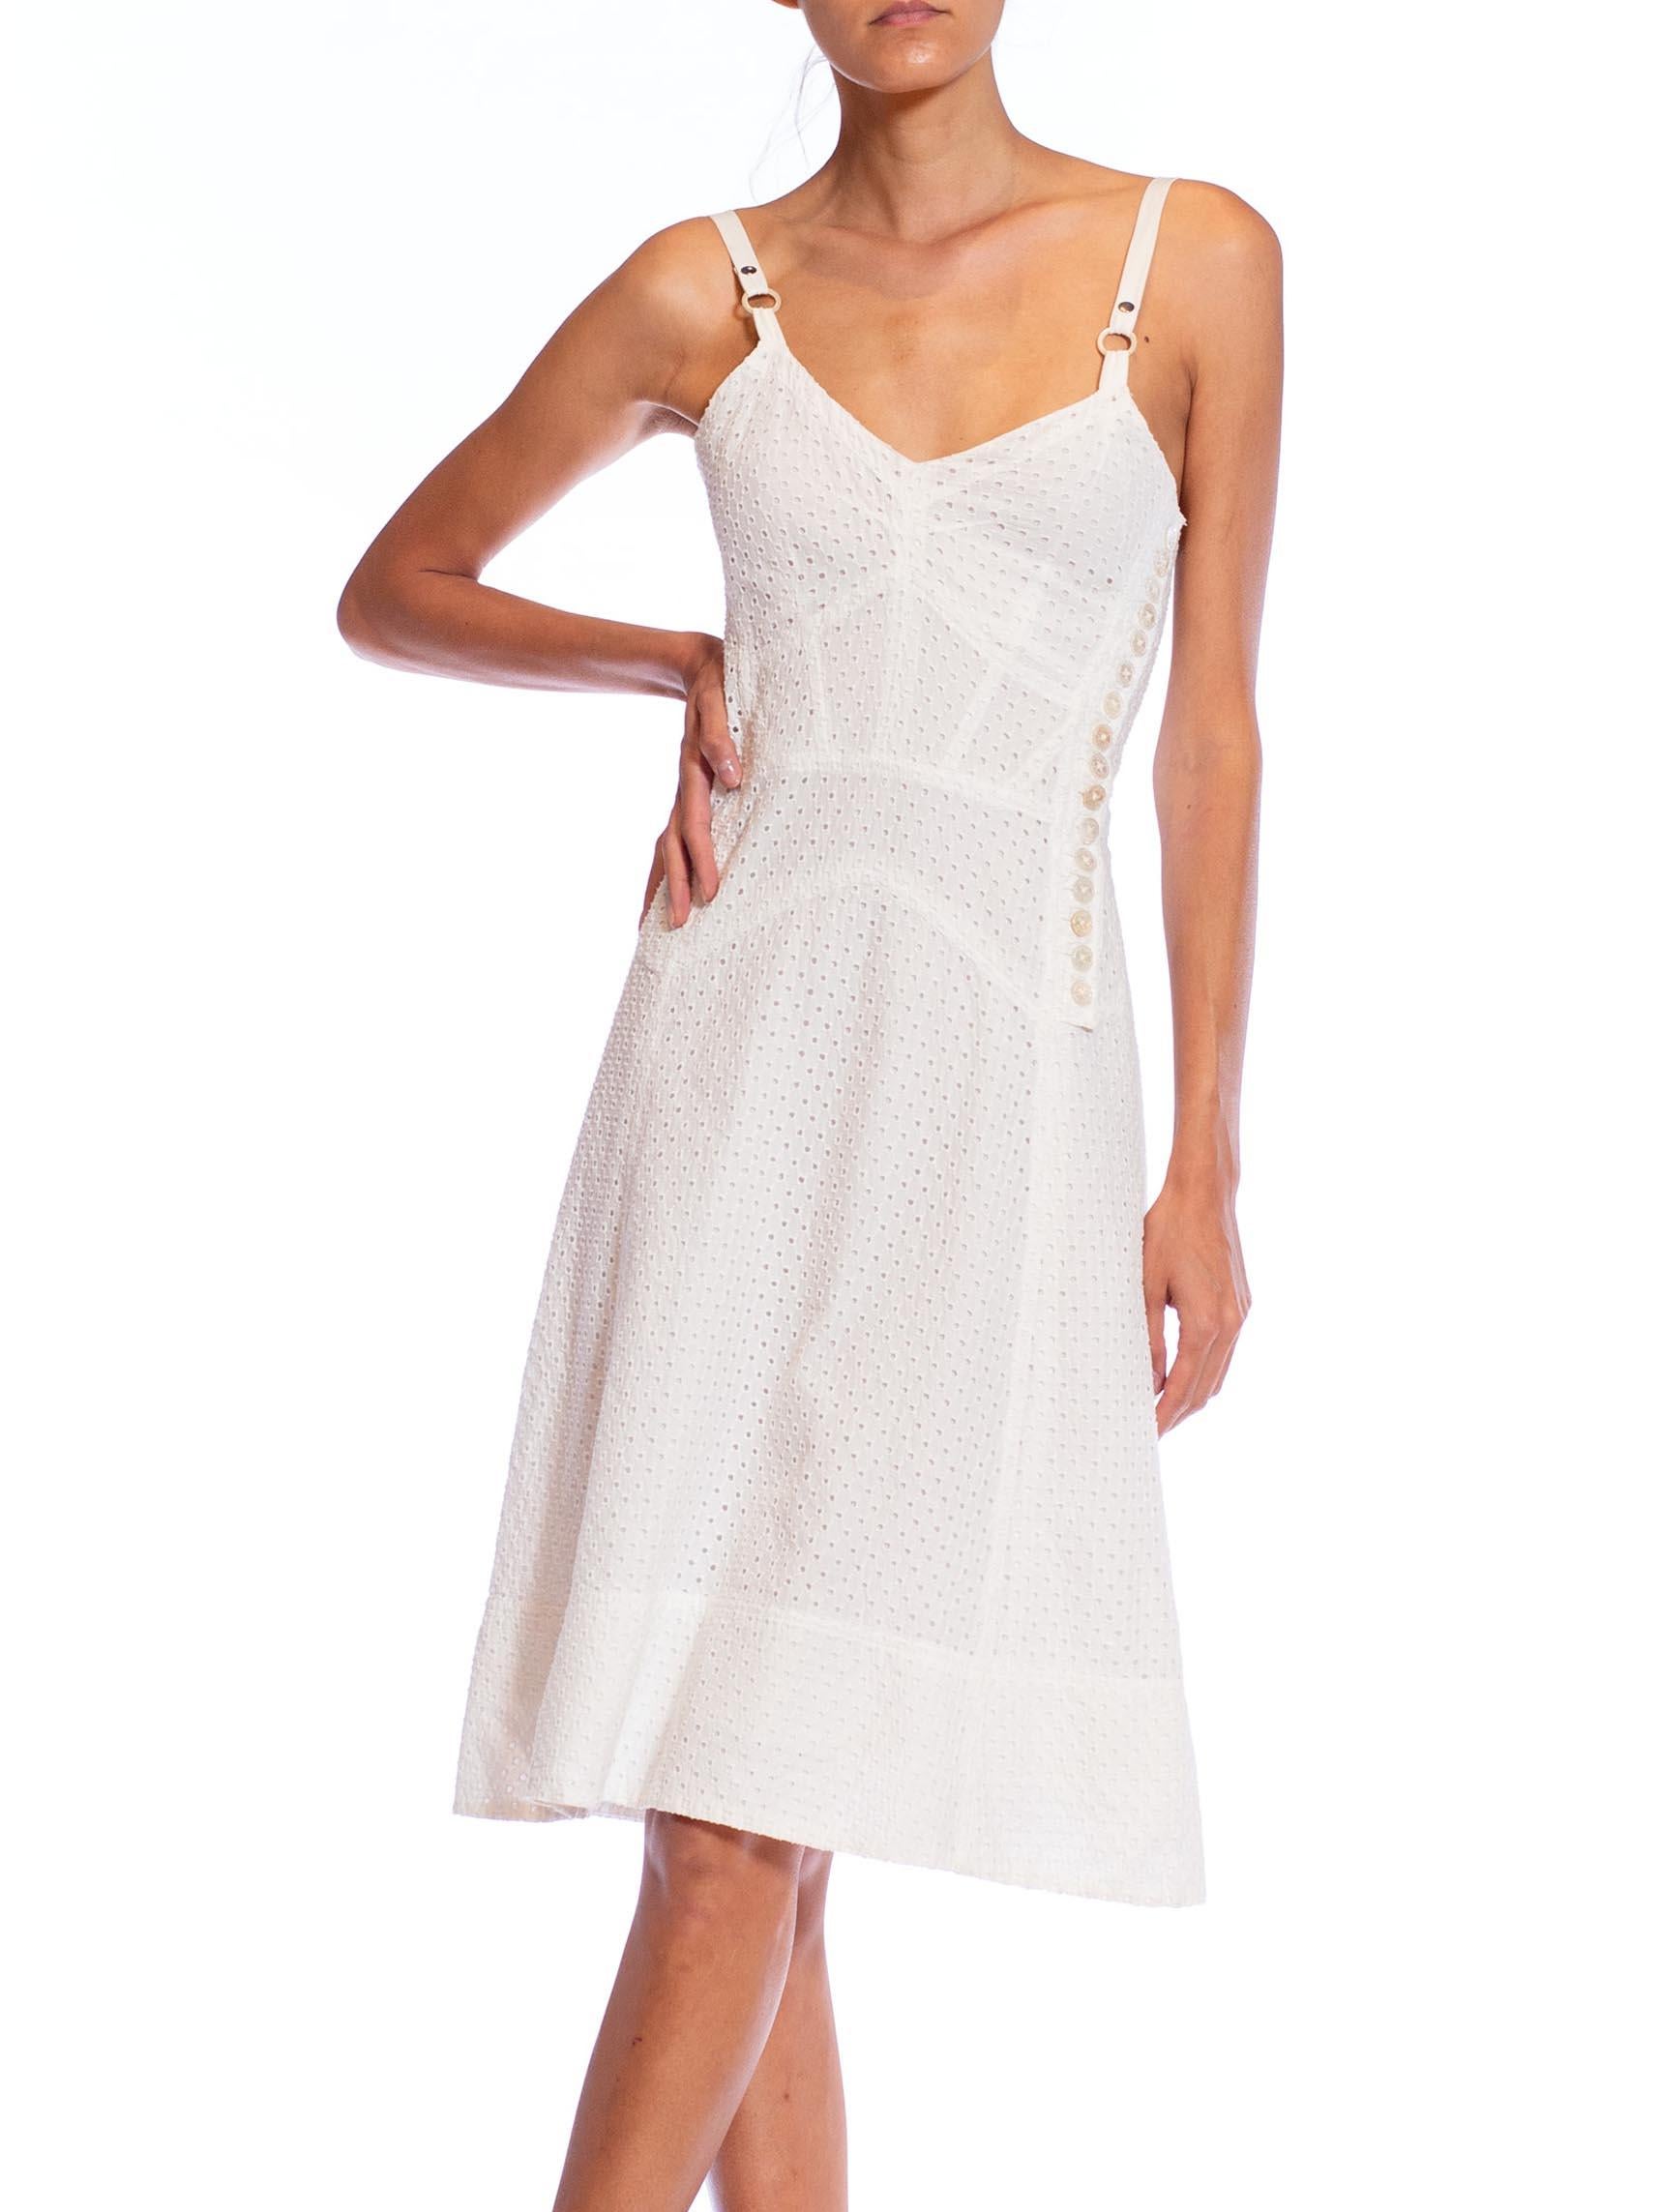 white 2000s dress